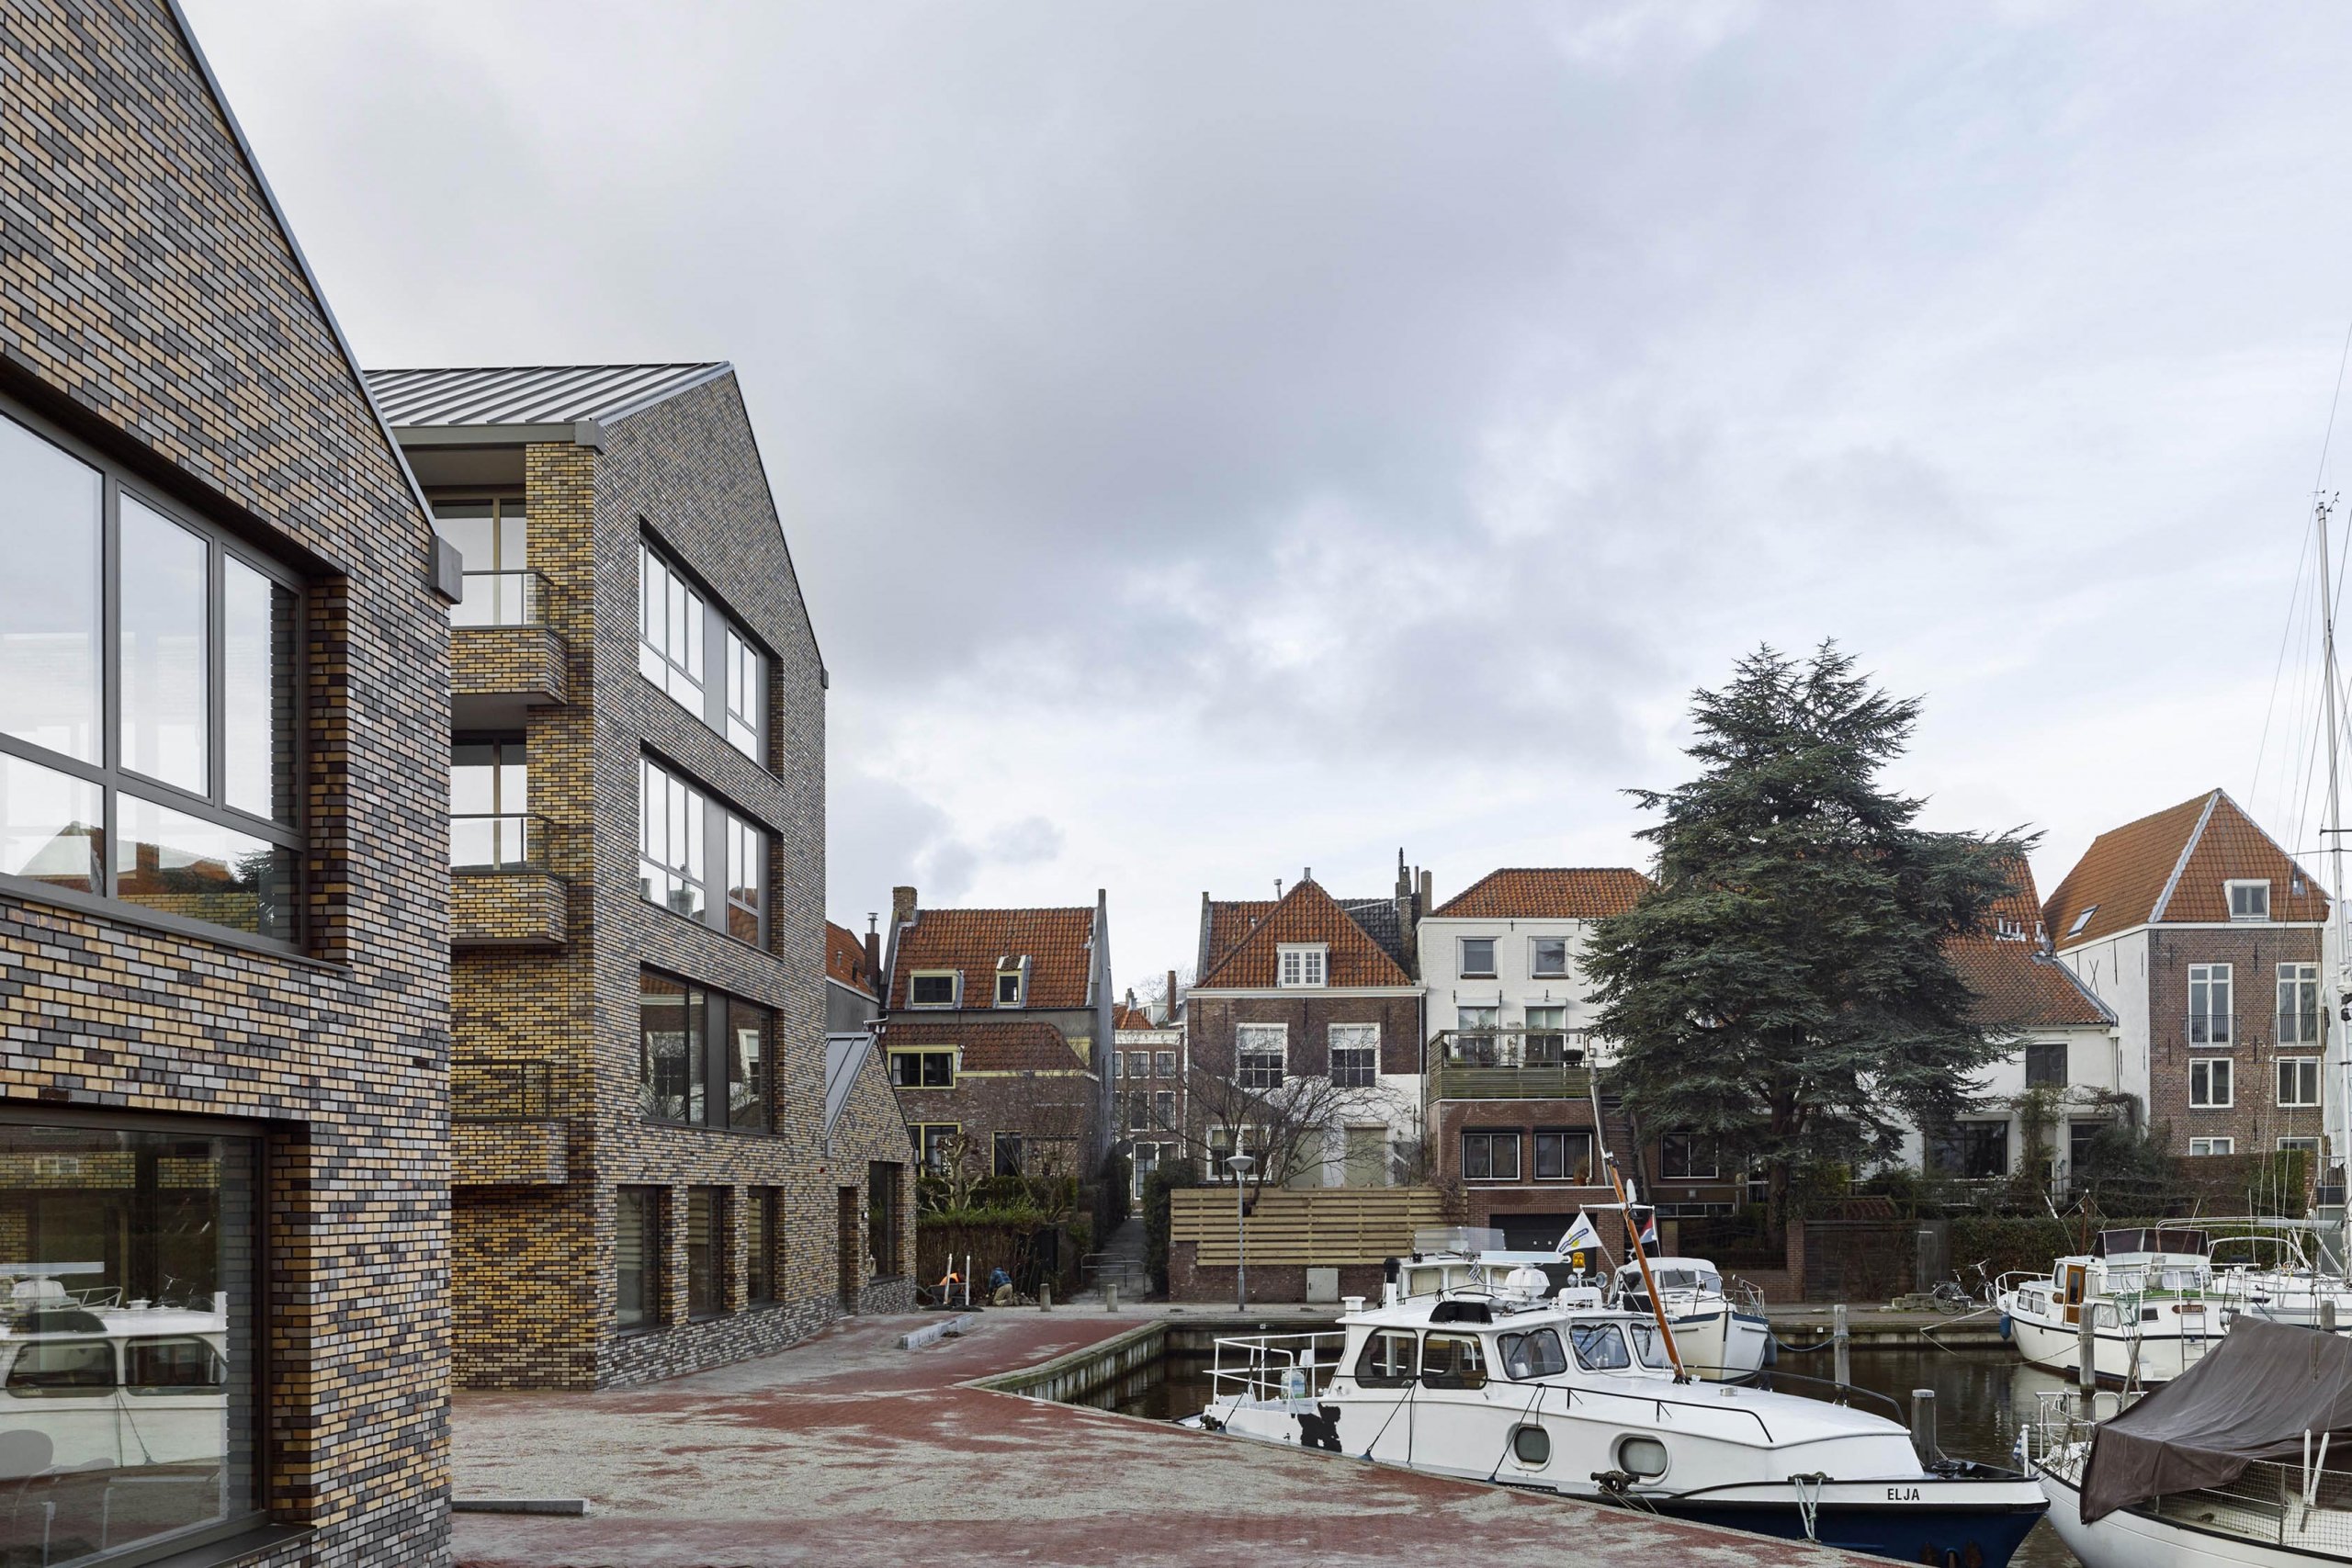 Exterieur van woon en zorgcomplex de maisbais in Middelburg.